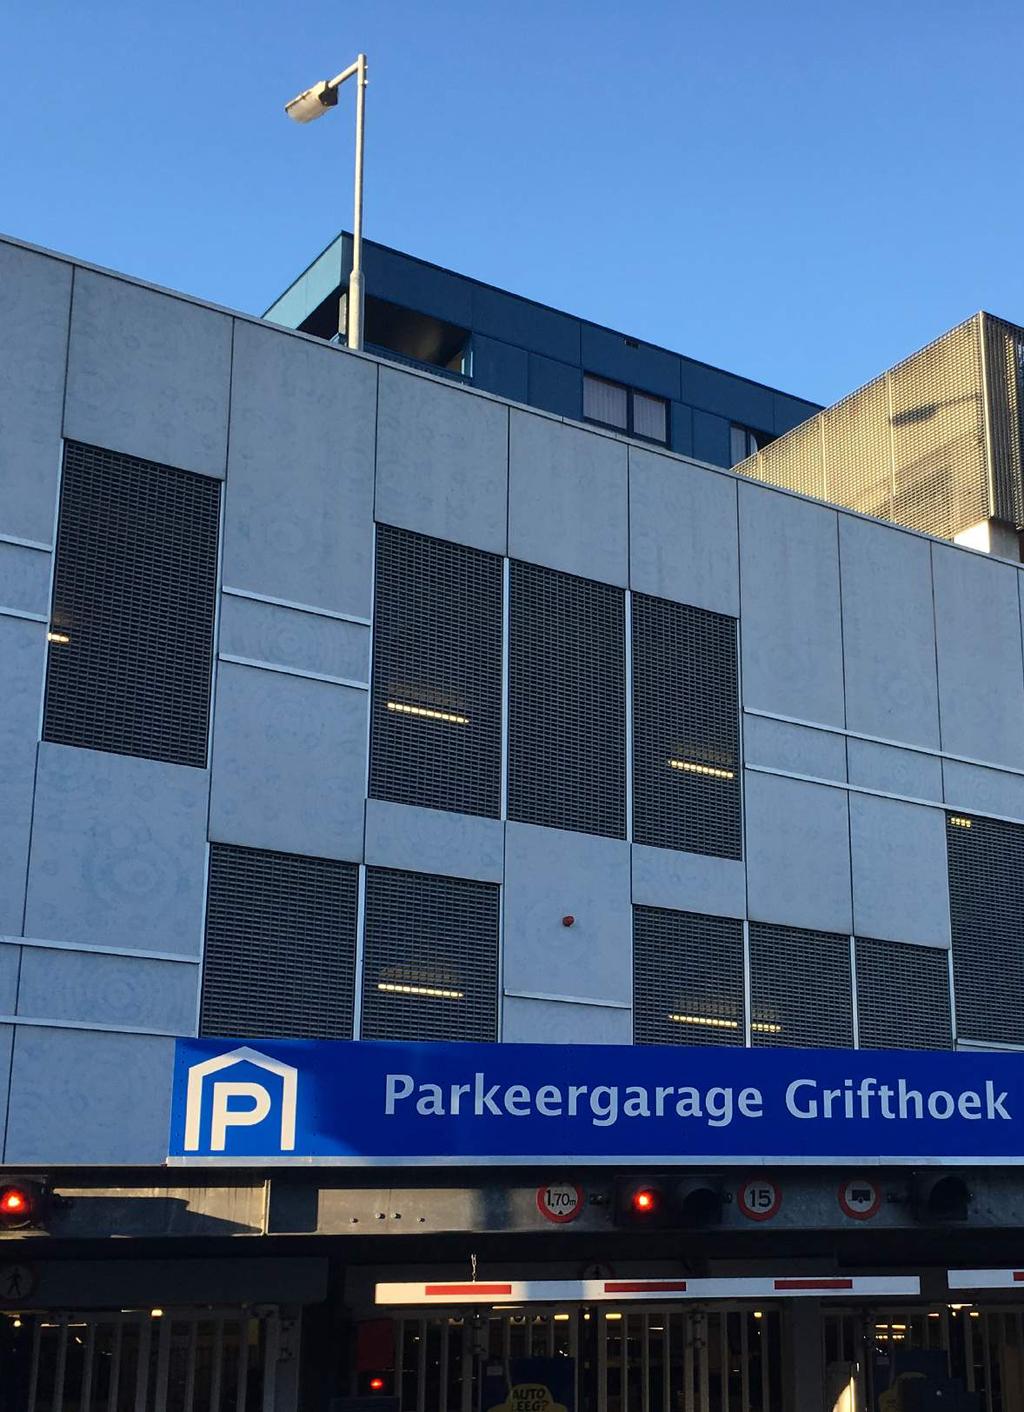 4 1 M 1 M 5 Autodelen & omgeving Grifthoek De deelhub zal gerealiseerd worden in parkeergarage de Grifthoek. De Gemeente Utrecht deze locatie gekozen voor het pilotproject.